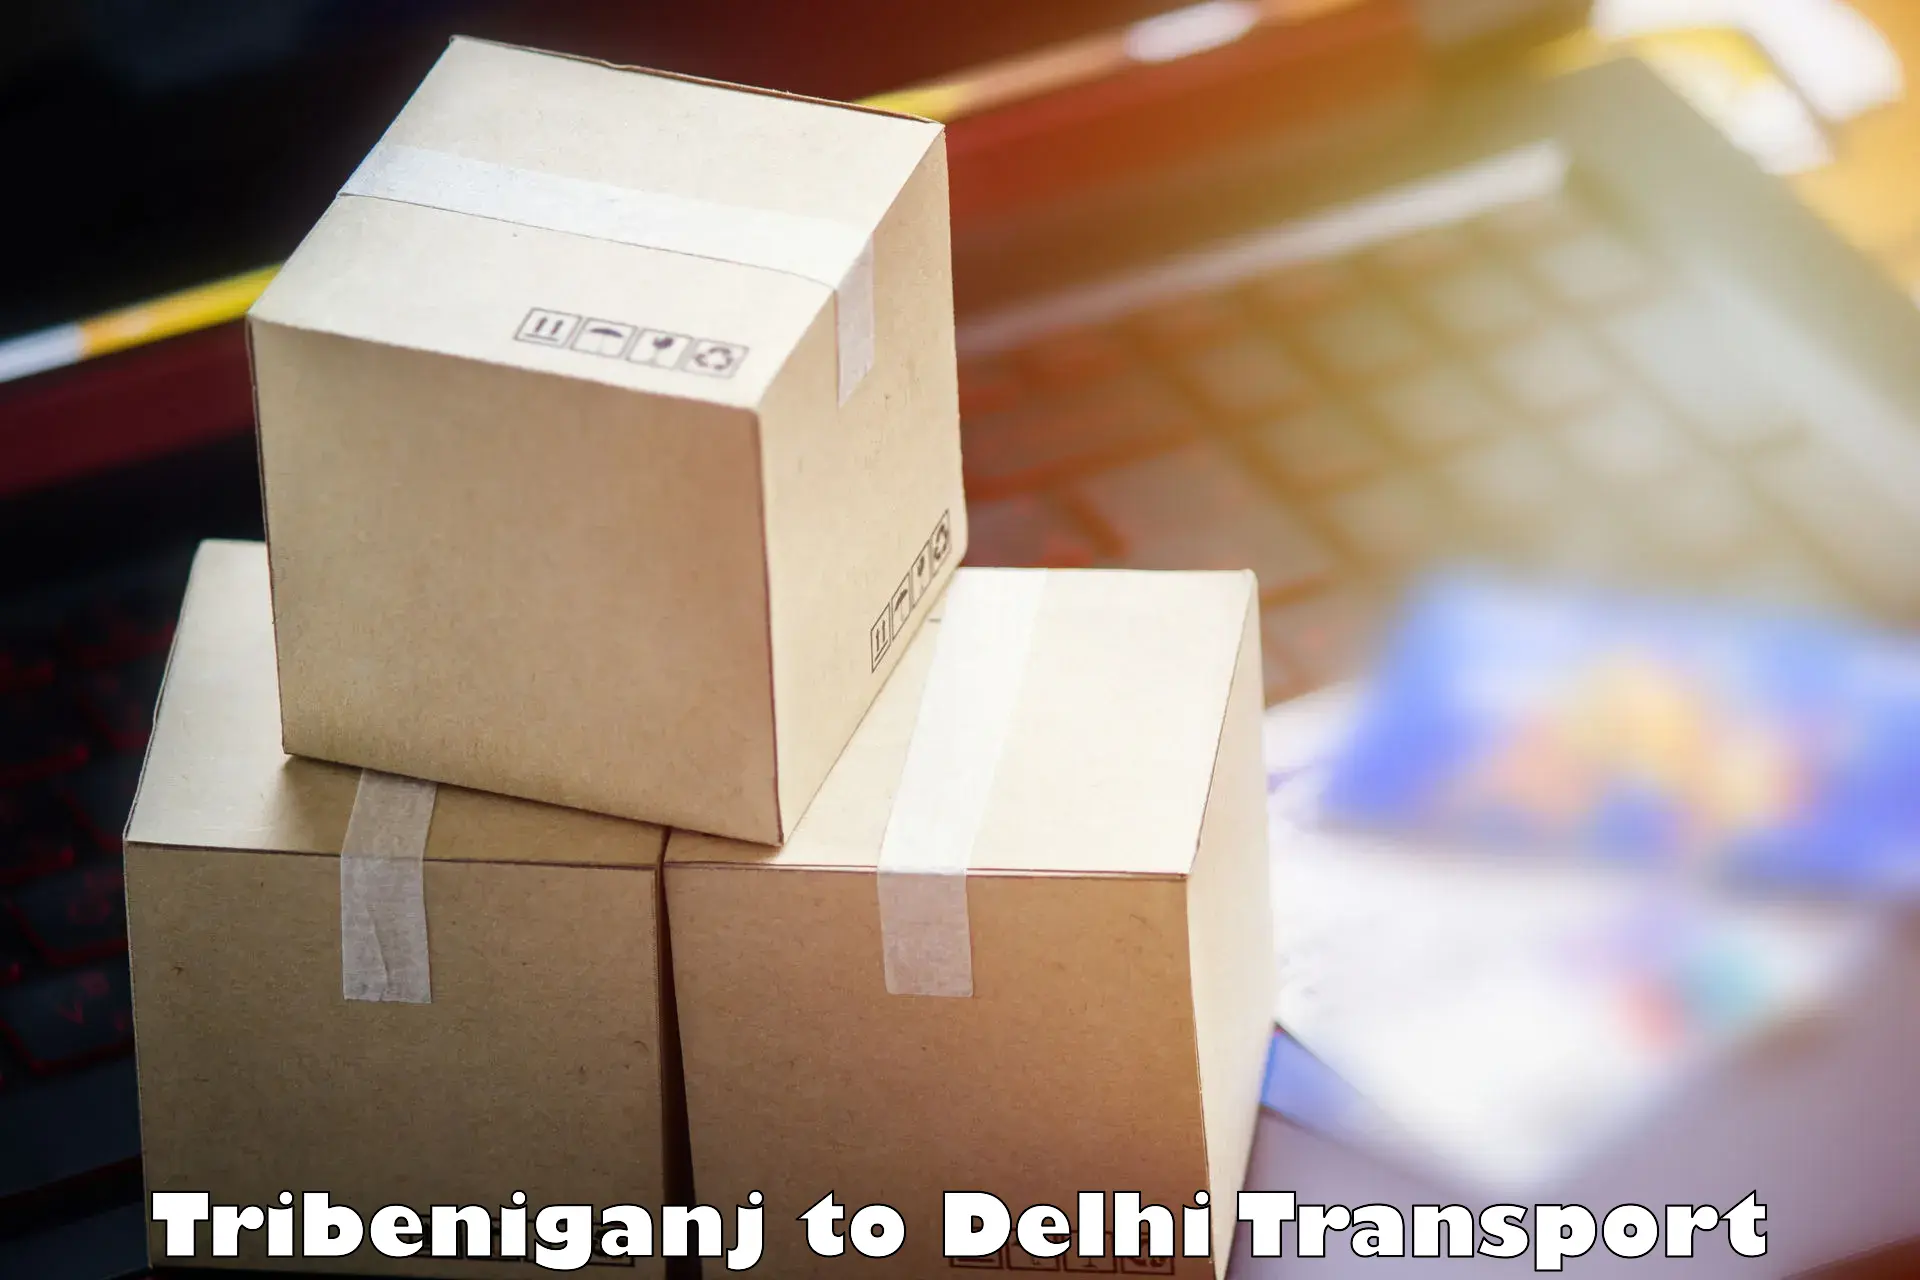 Shipping services Tribeniganj to Jawaharlal Nehru University New Delhi